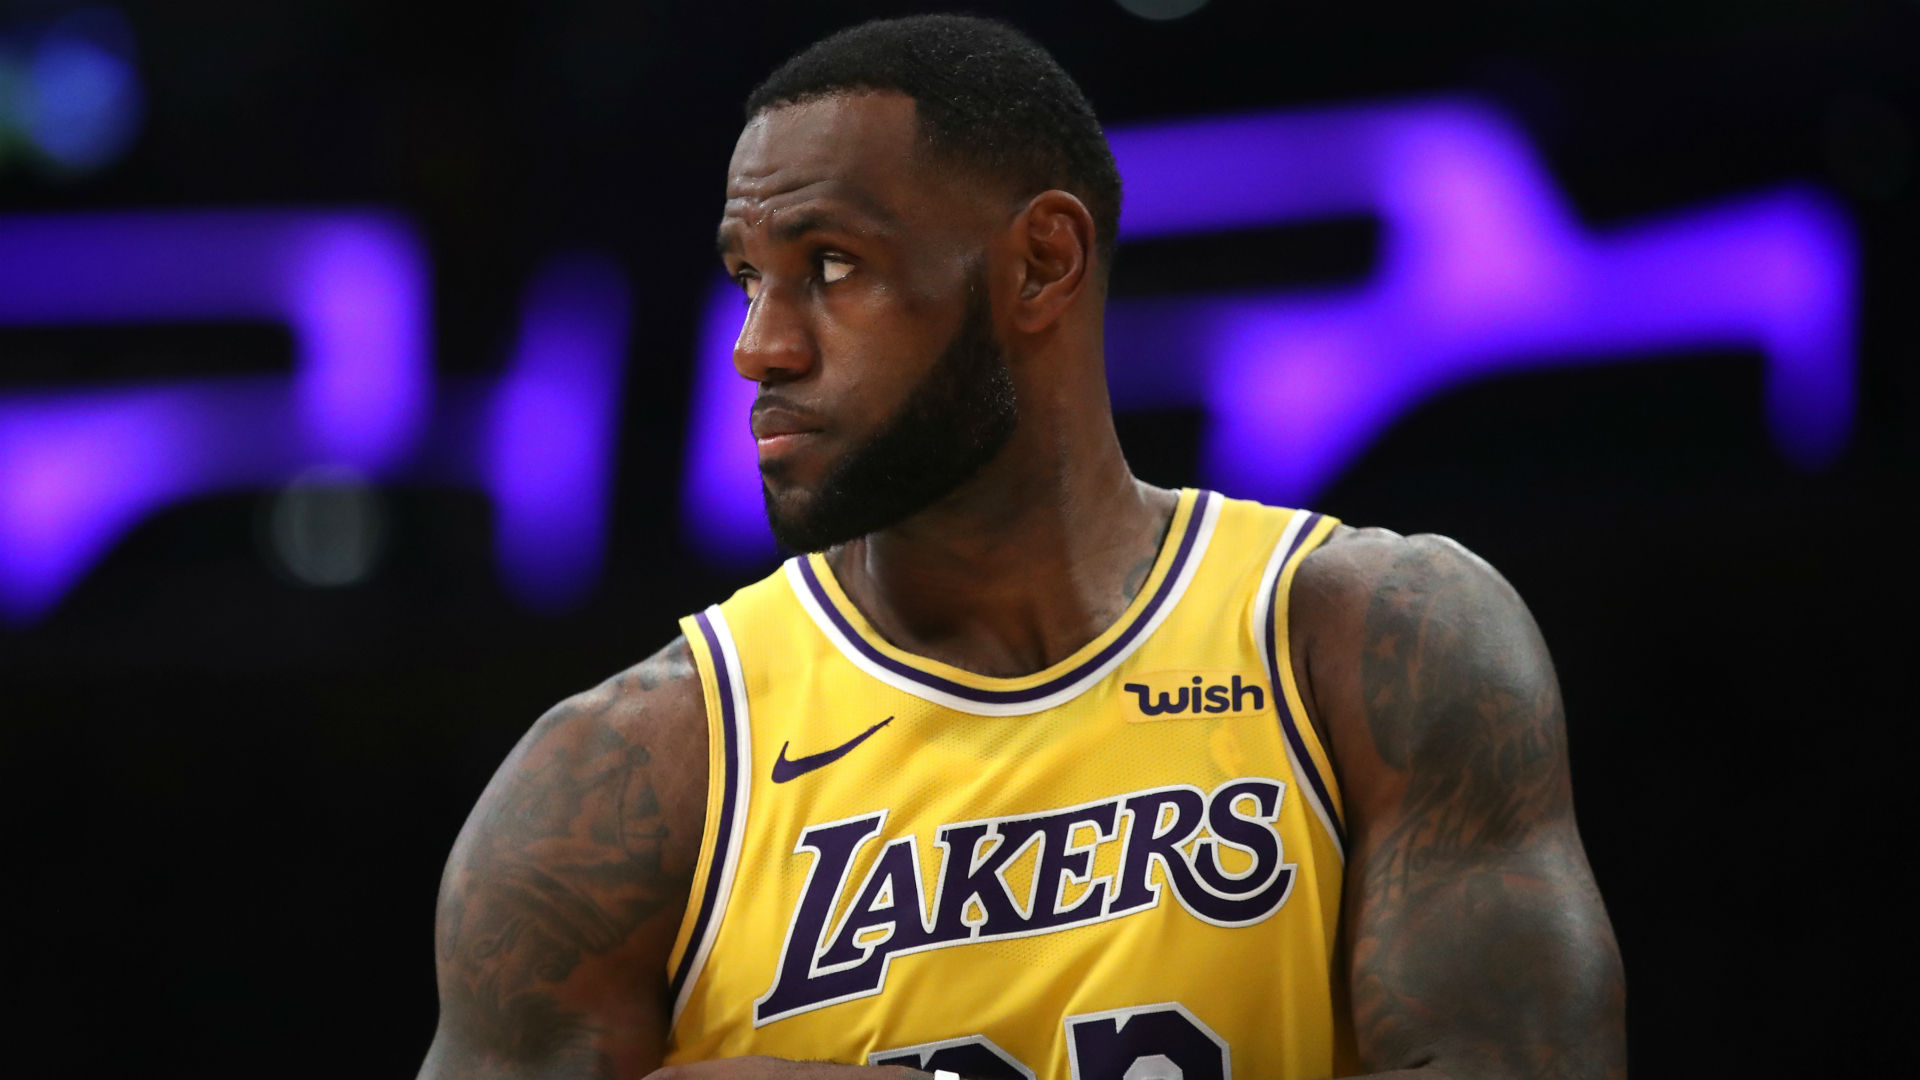 Việc LA Lakers không vào được playoffs chỉ khiến các đội khác lo lắng hơn